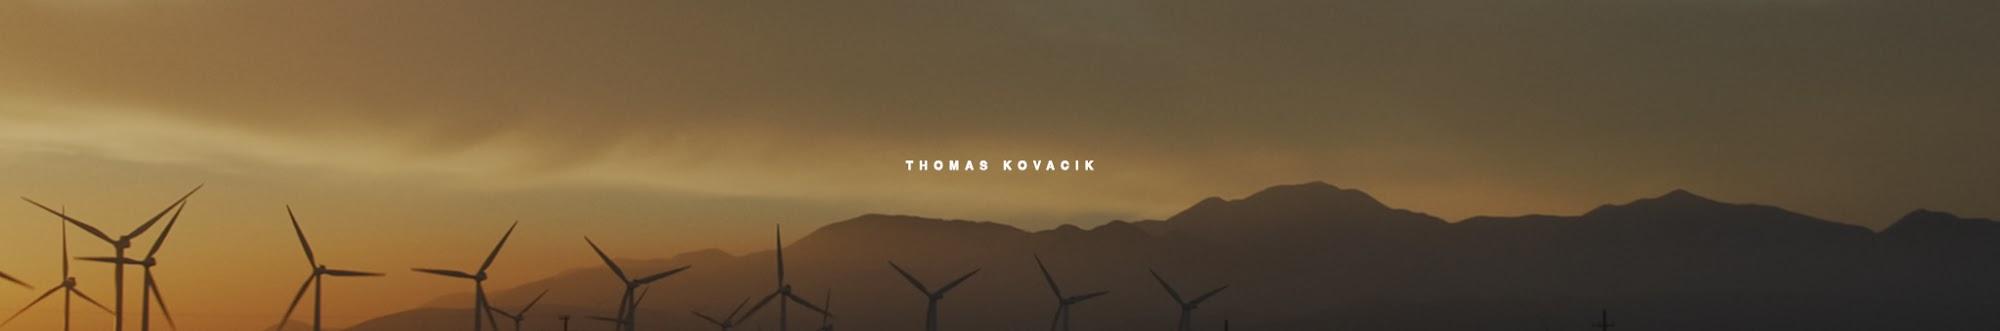 Thomas Kovacik